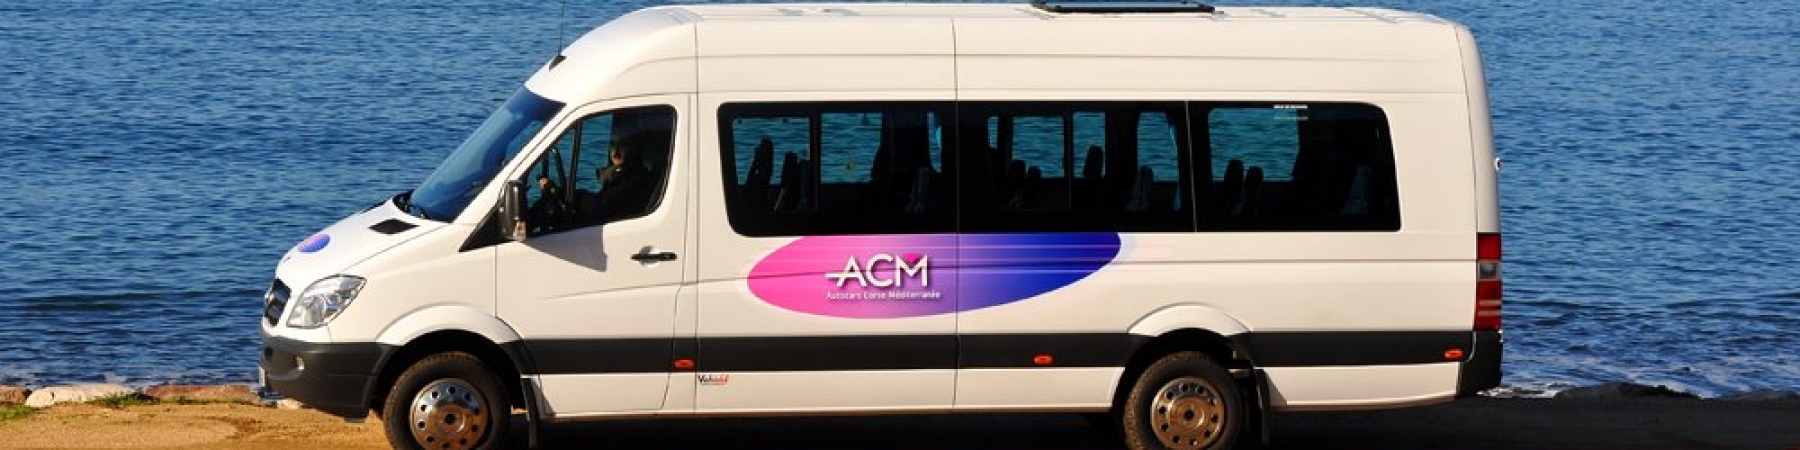 Transport en bus Ajaccio Corse